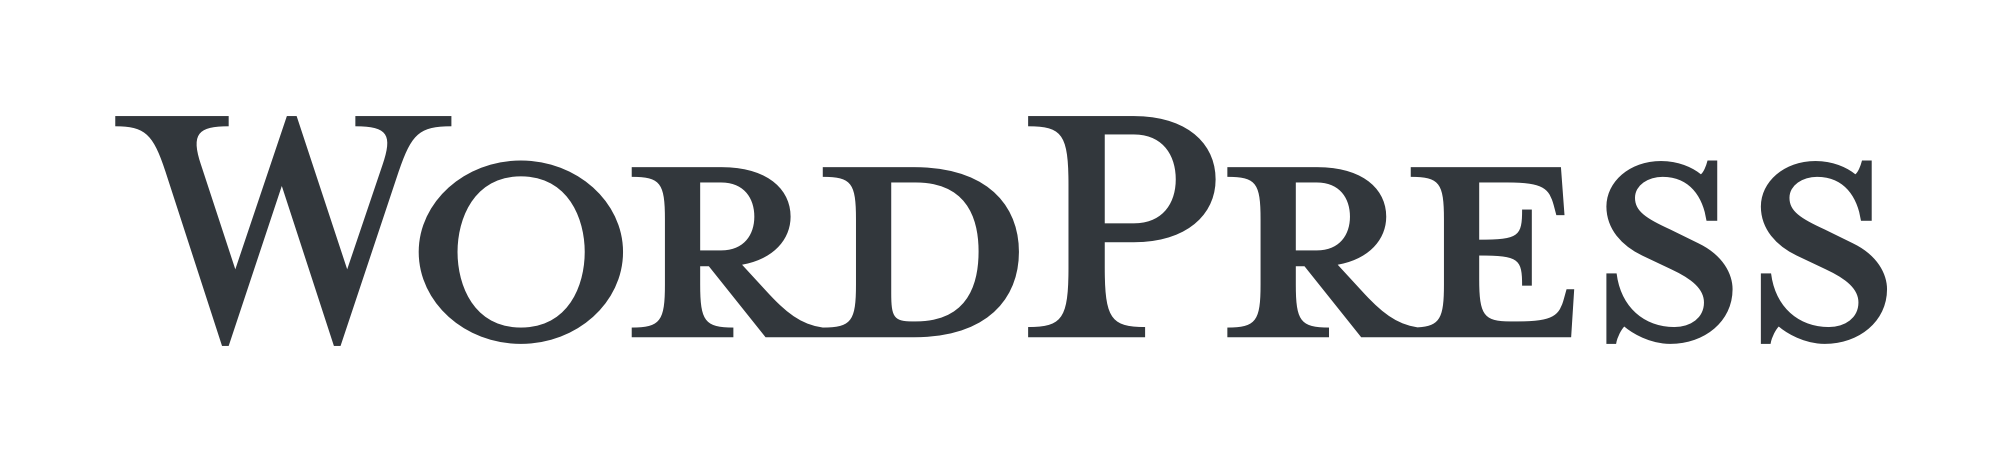 Wordpress Logo PNG - 173243